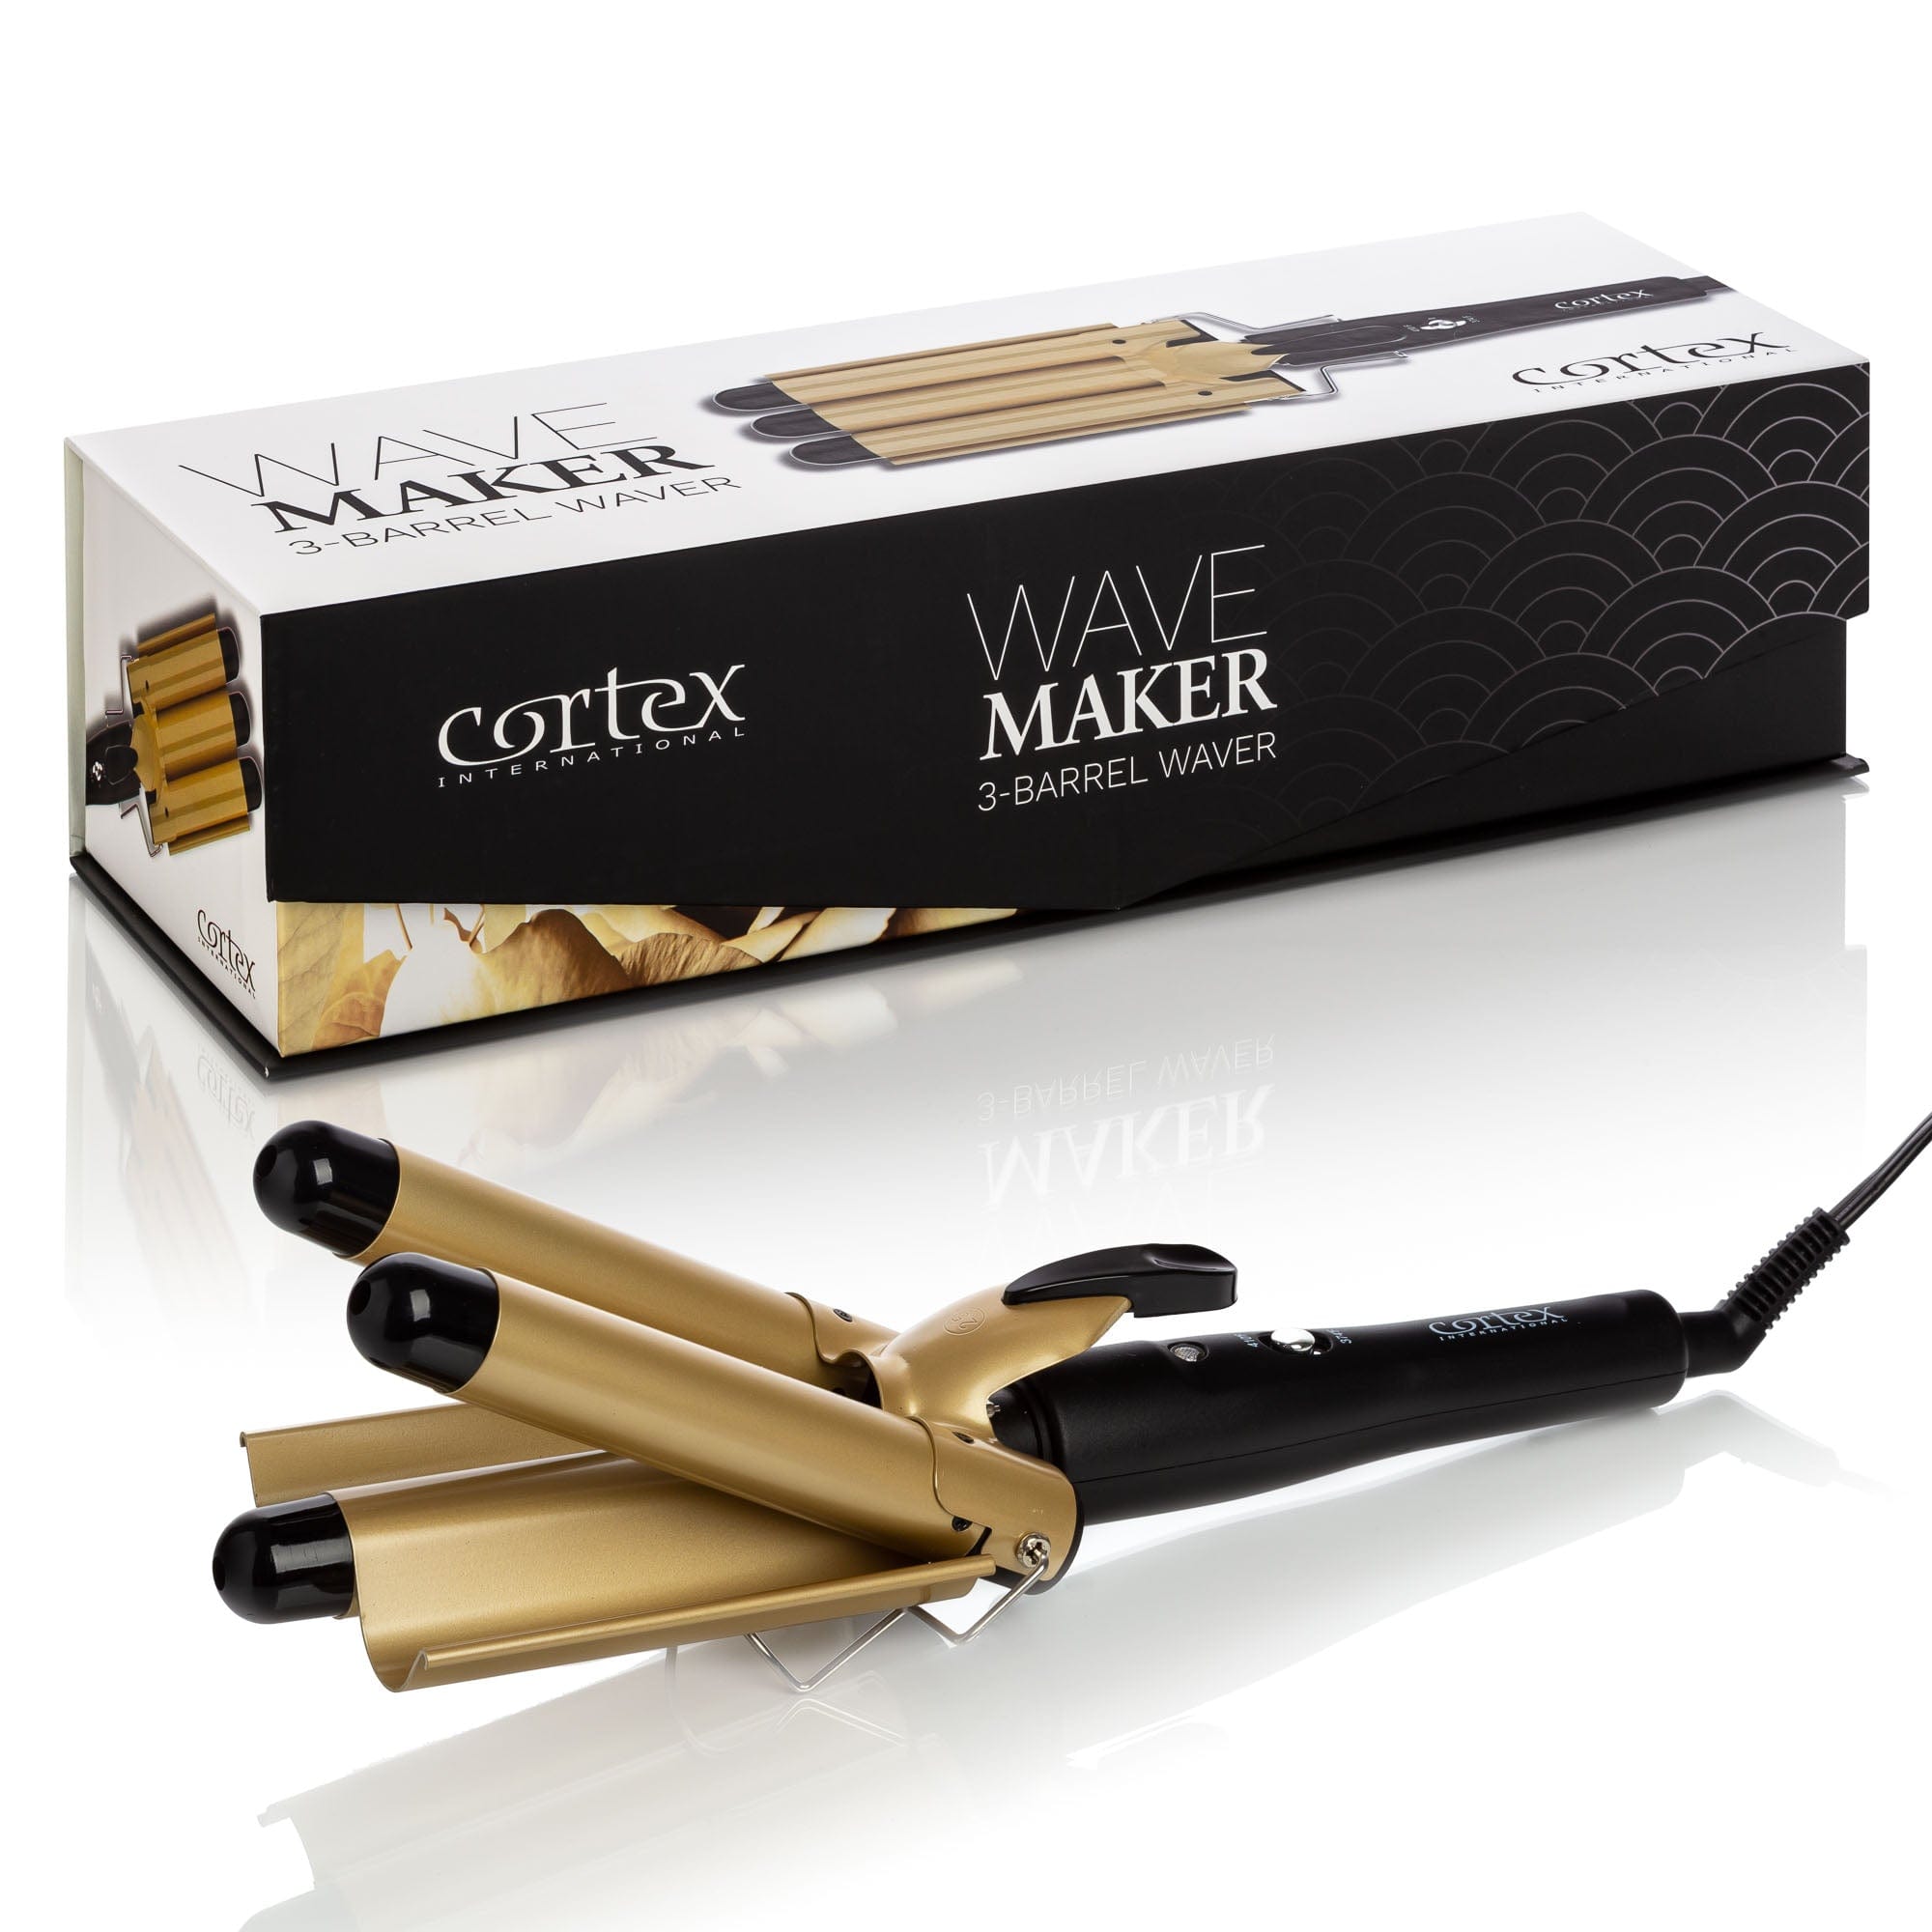 Cortex International Black/Gold Wave Maker - 3-Barrel Waver